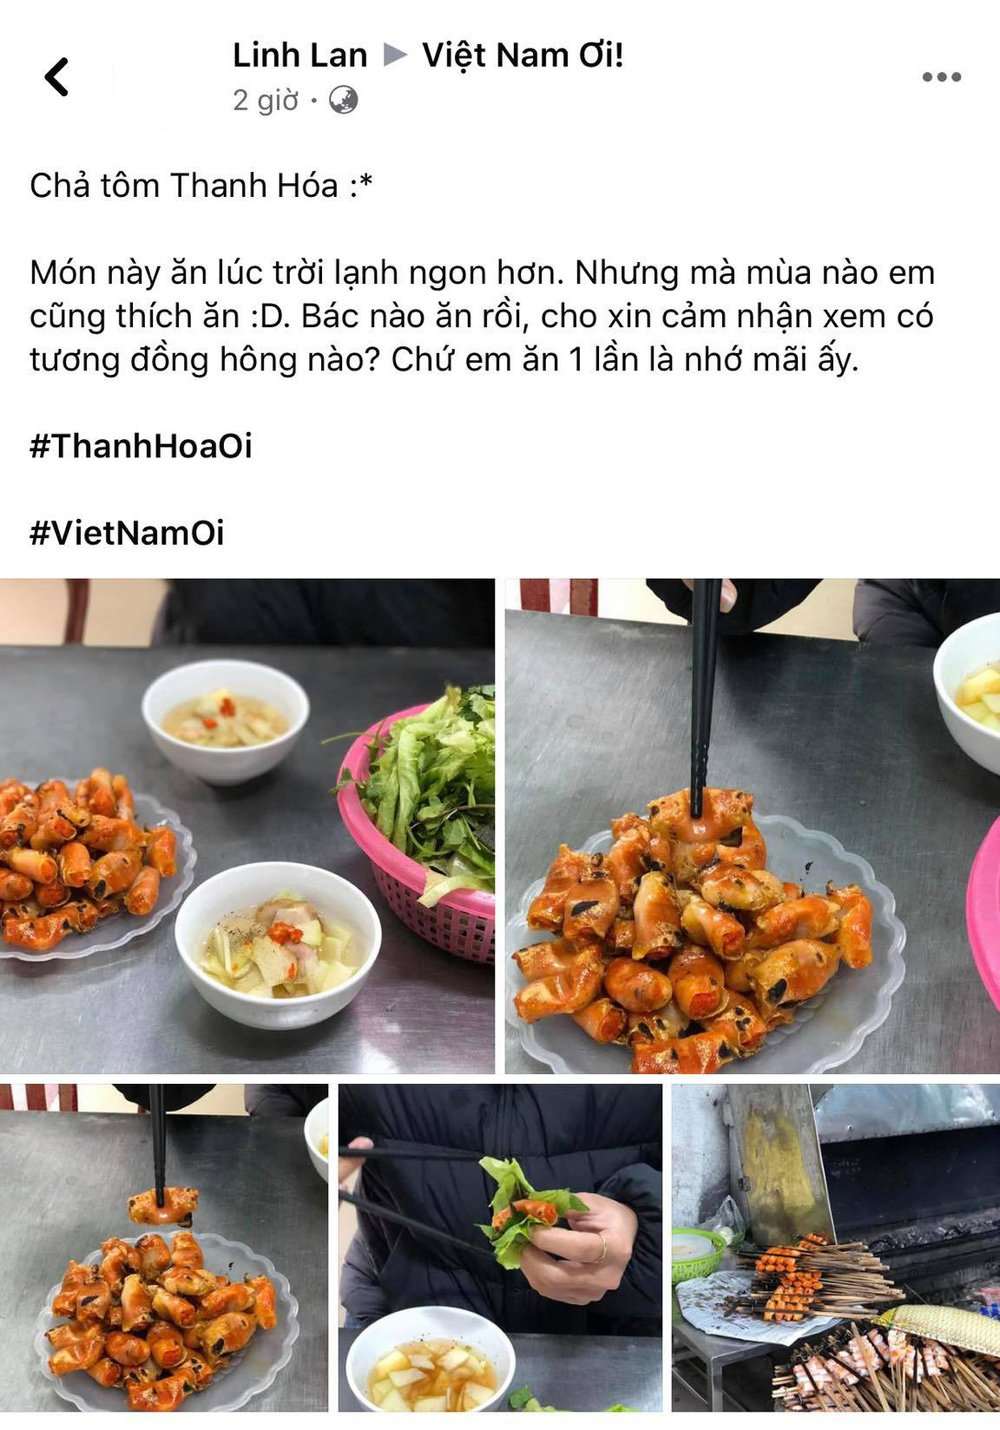  
Bài viết được đăng tải trên group Việt Nam Ơi.